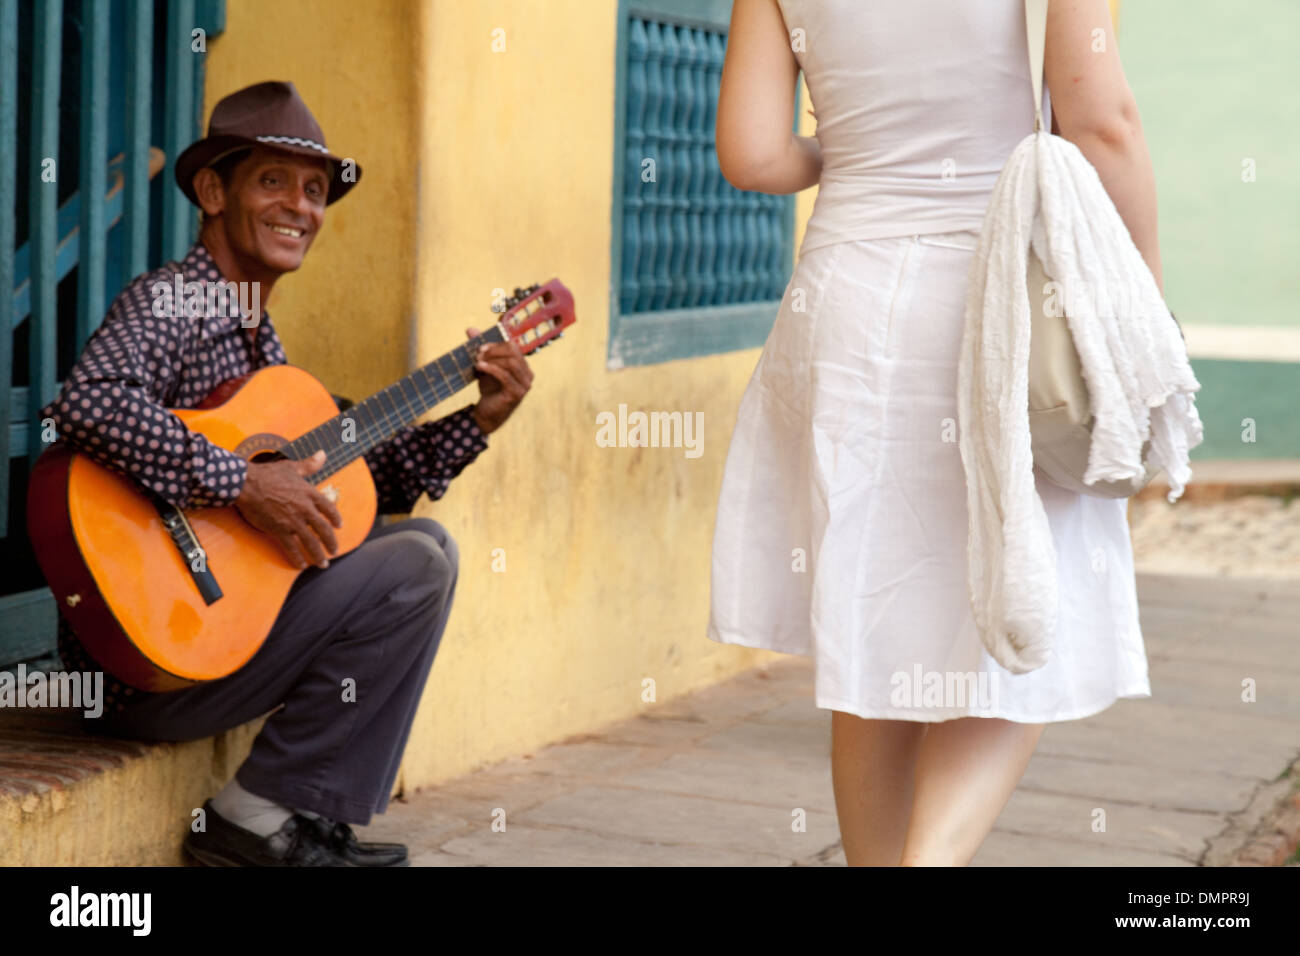 Ein Gitarrist spielen in dieser Straße Szene, wie eine Frau vorbei - kubanischen Kultur in Trinidad, Kuba, Karibik, Lateinamerika kommt Stockfoto